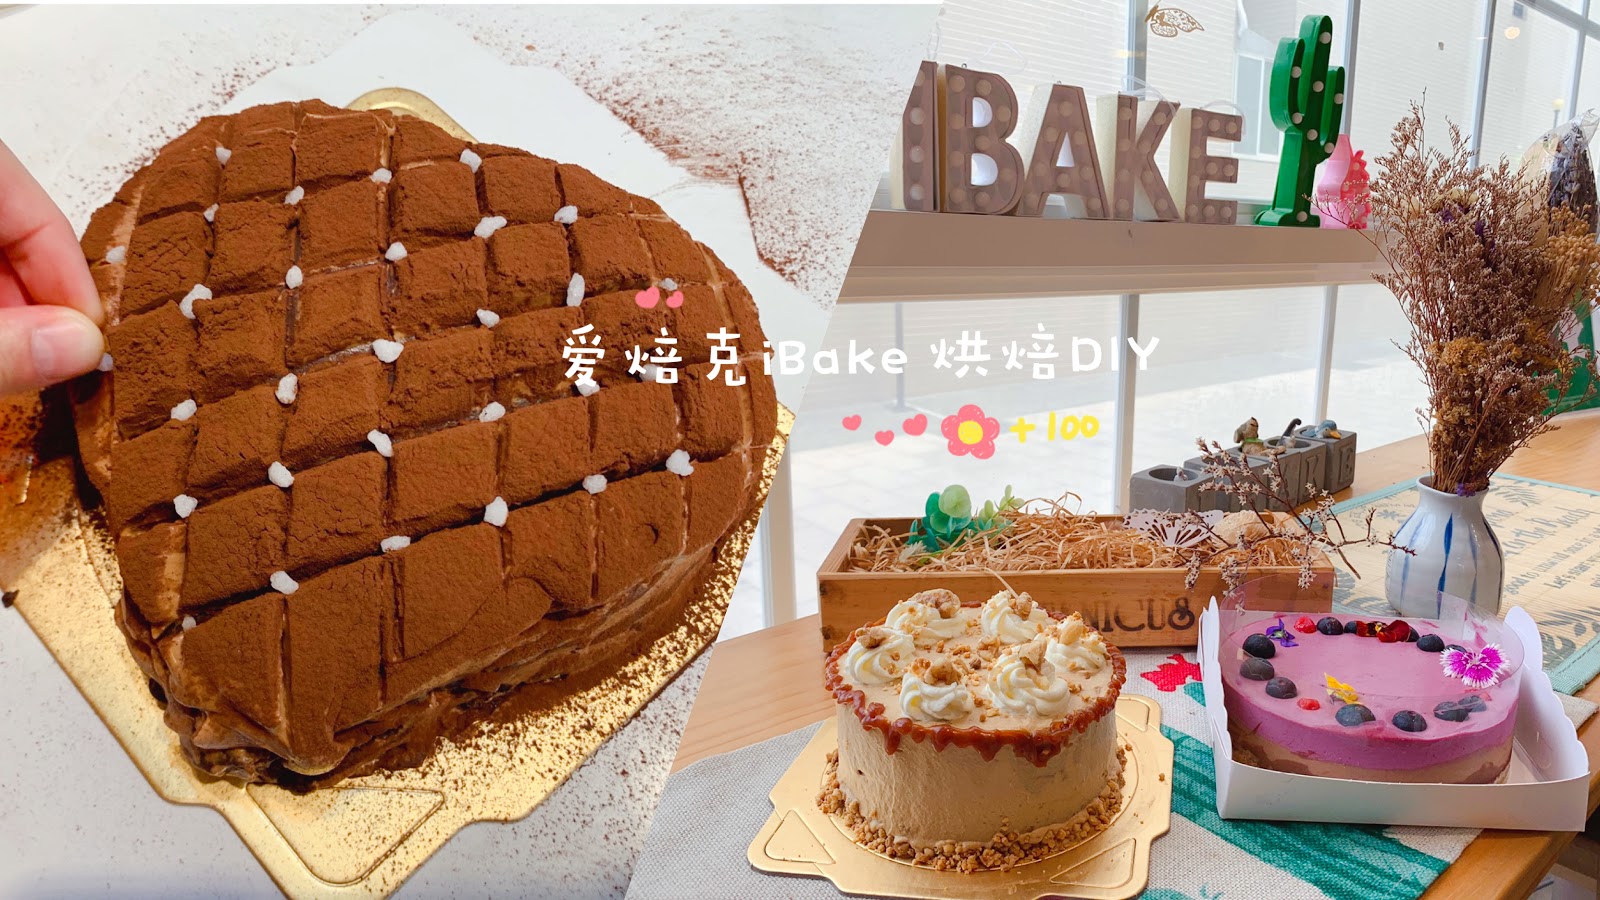 台南永康,愛焙克,iBake,烘焙DIY,烘焙教室,手做蛋糕,集點活動,甜點,台南美食